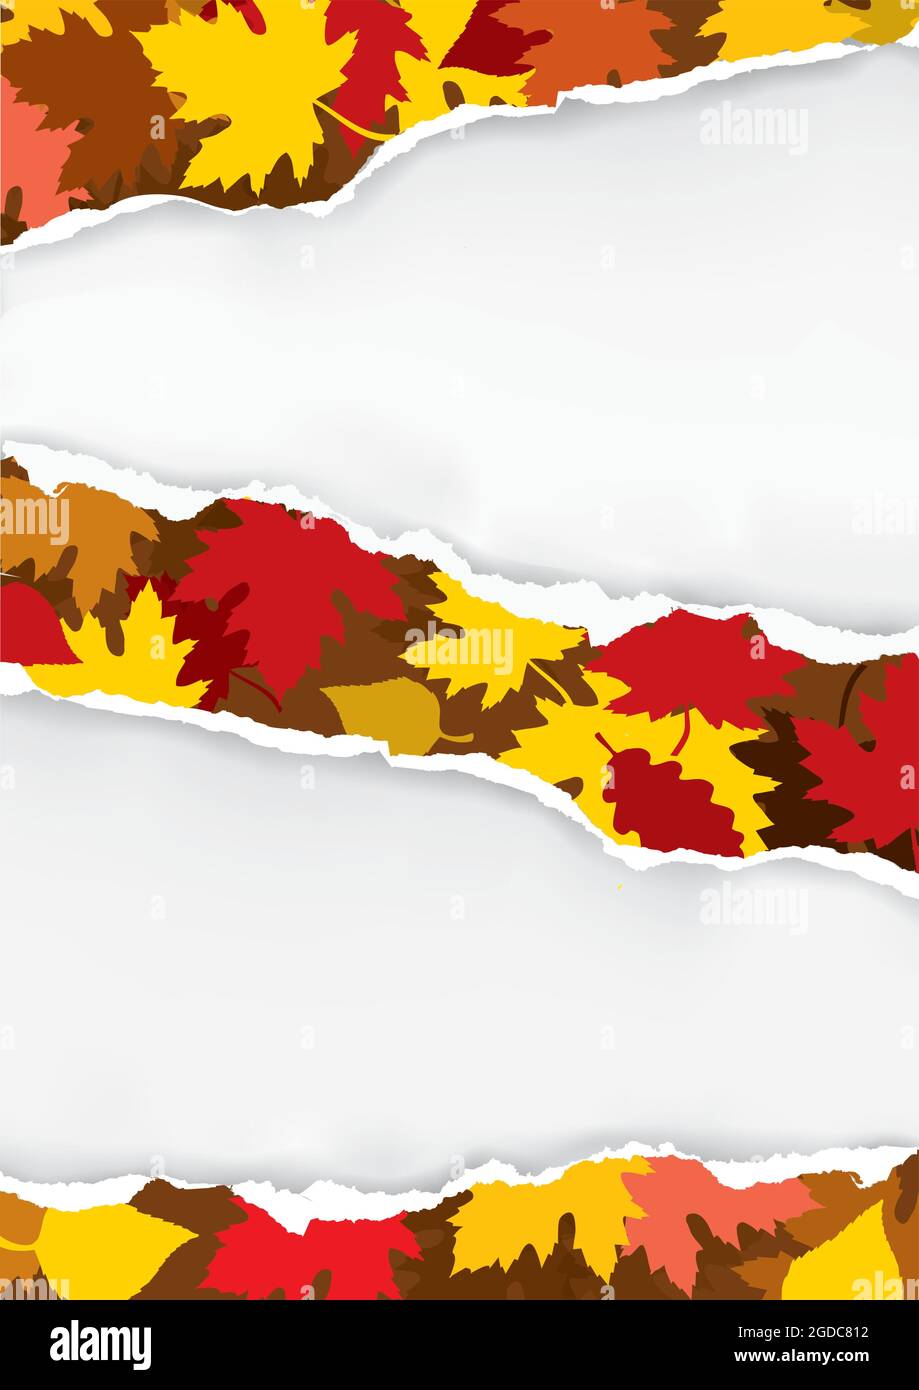 Zerrissenes Papier mit Herbstblättern. Illustration eines zerrissenen Papiers mit Herbstblättern. Platzieren Sie Ihr Bild oder Ihren Text. Vektor verfügbar. Stock Vektor